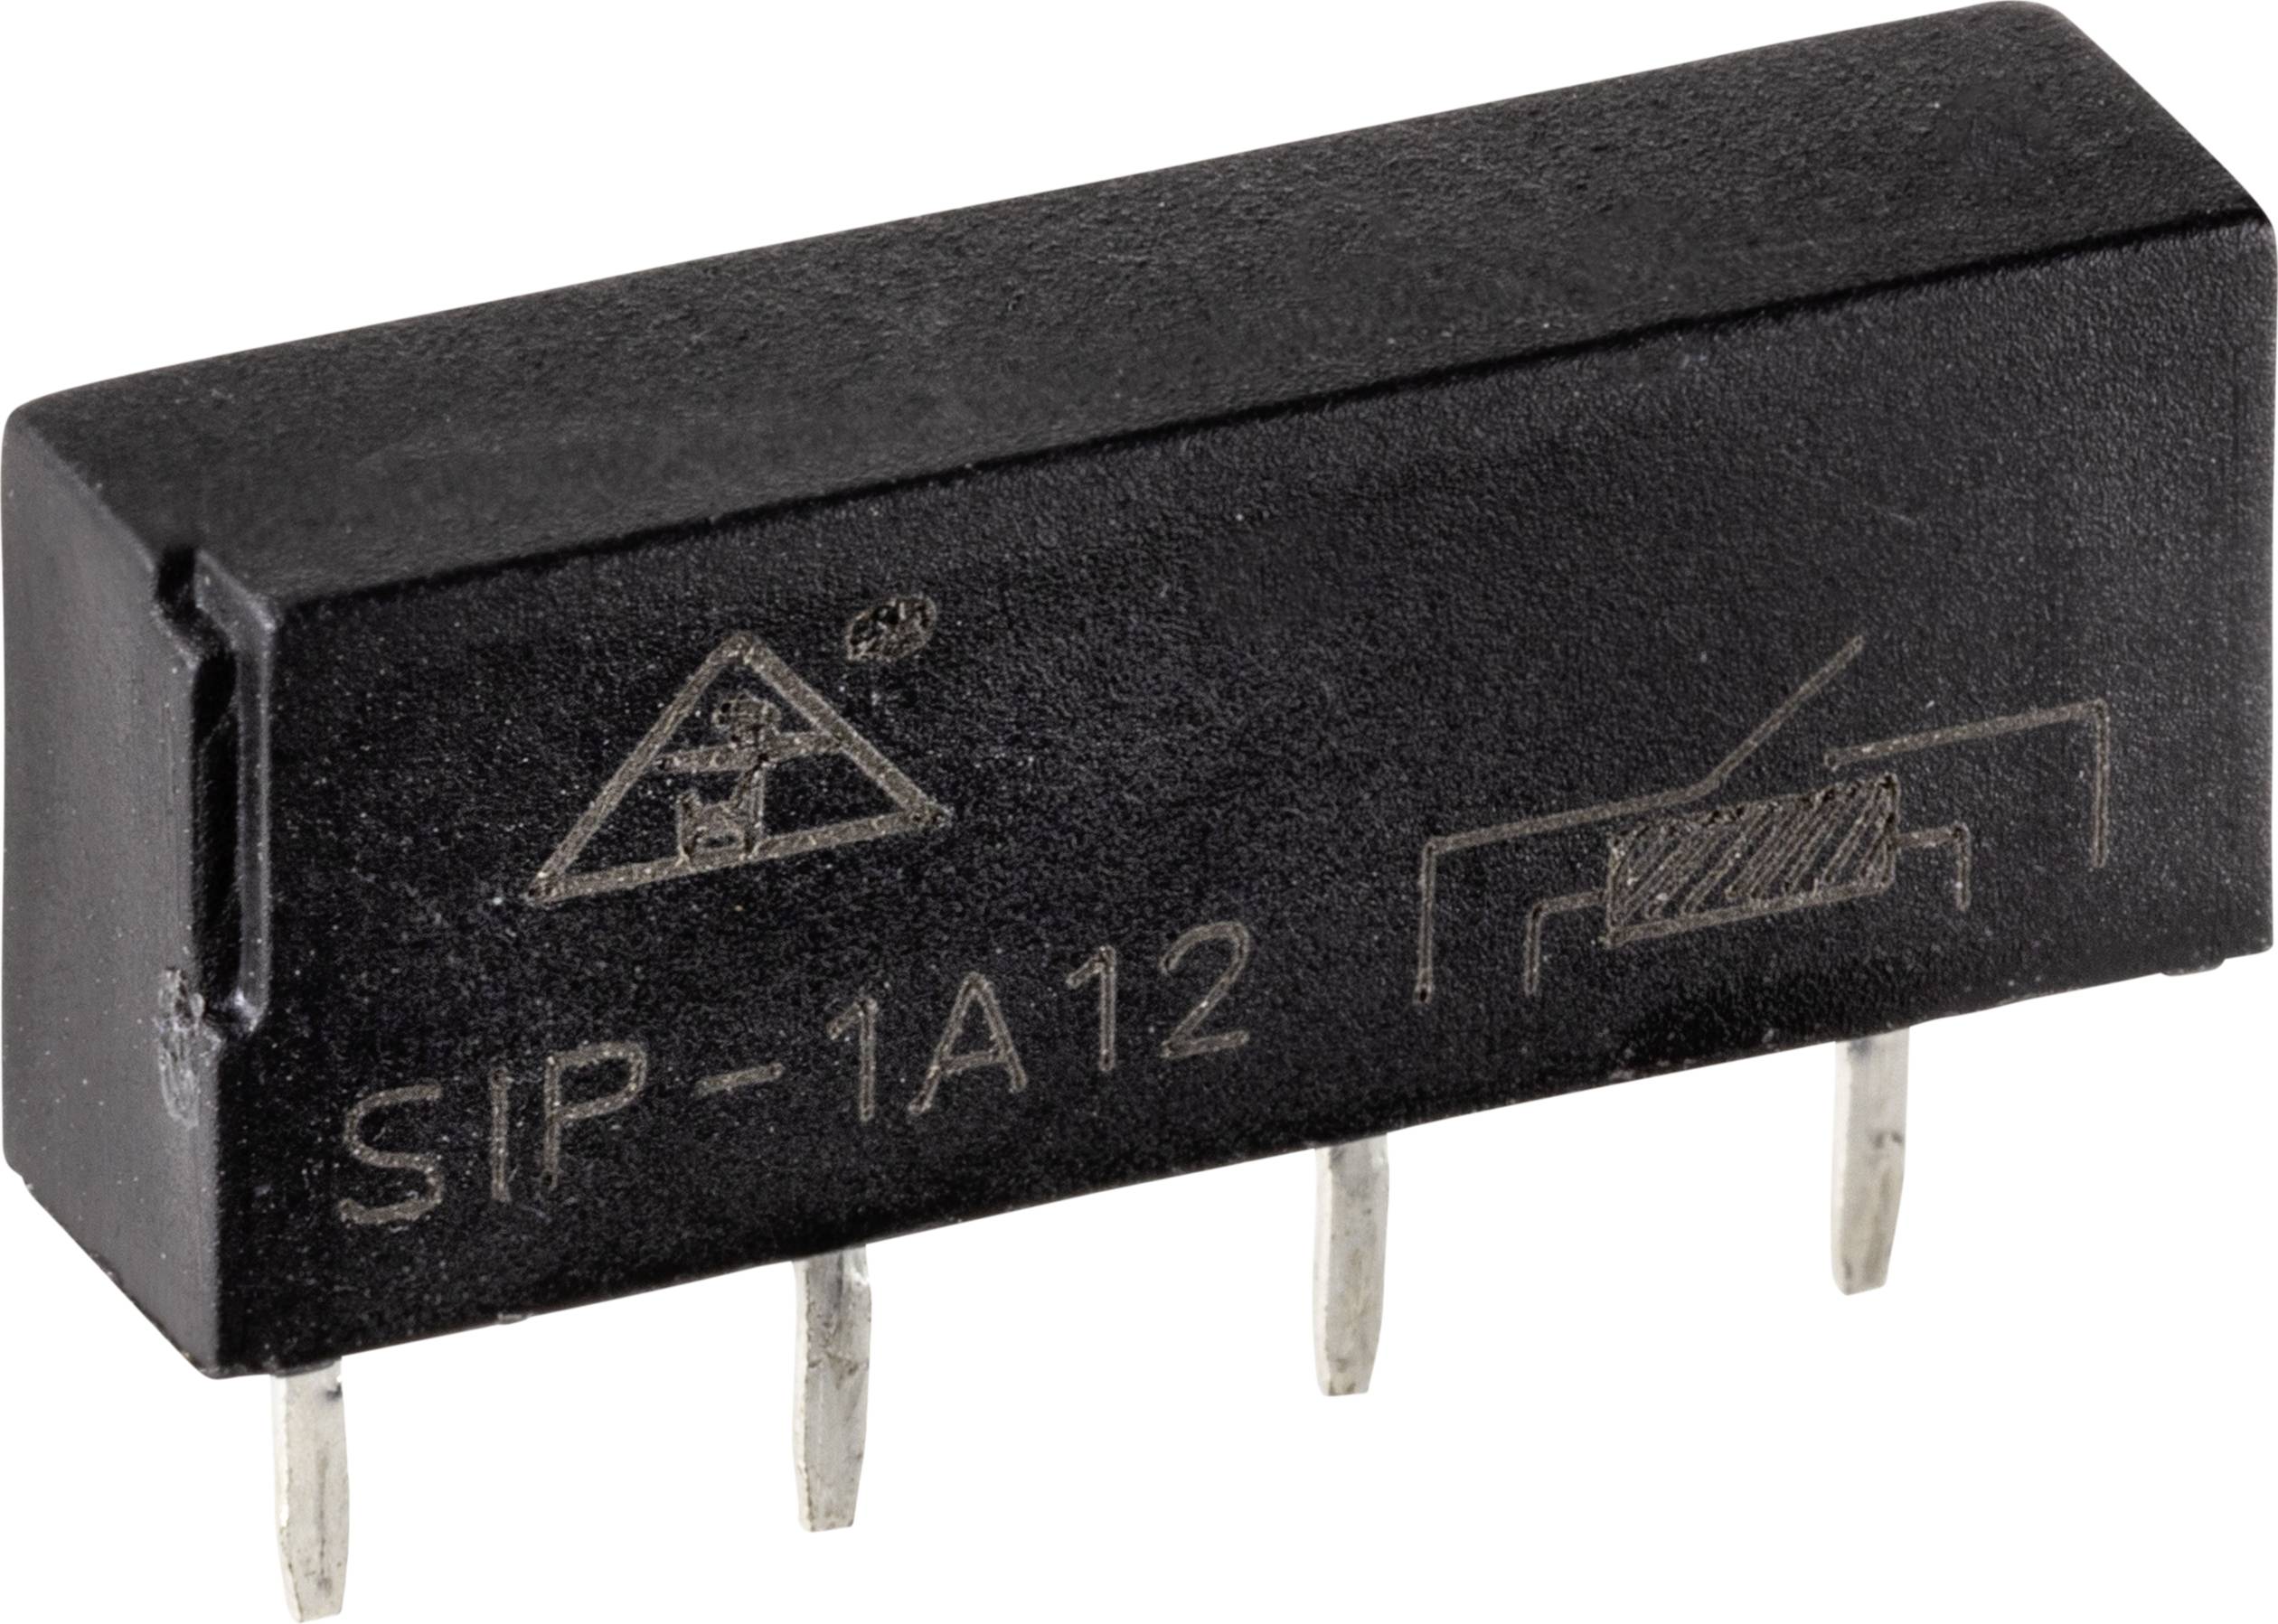 TRU COMPONENTS SIP1A12 Reed-Relais 1 Schließer 12 V/DC 0.5 A 10 W SIP-4